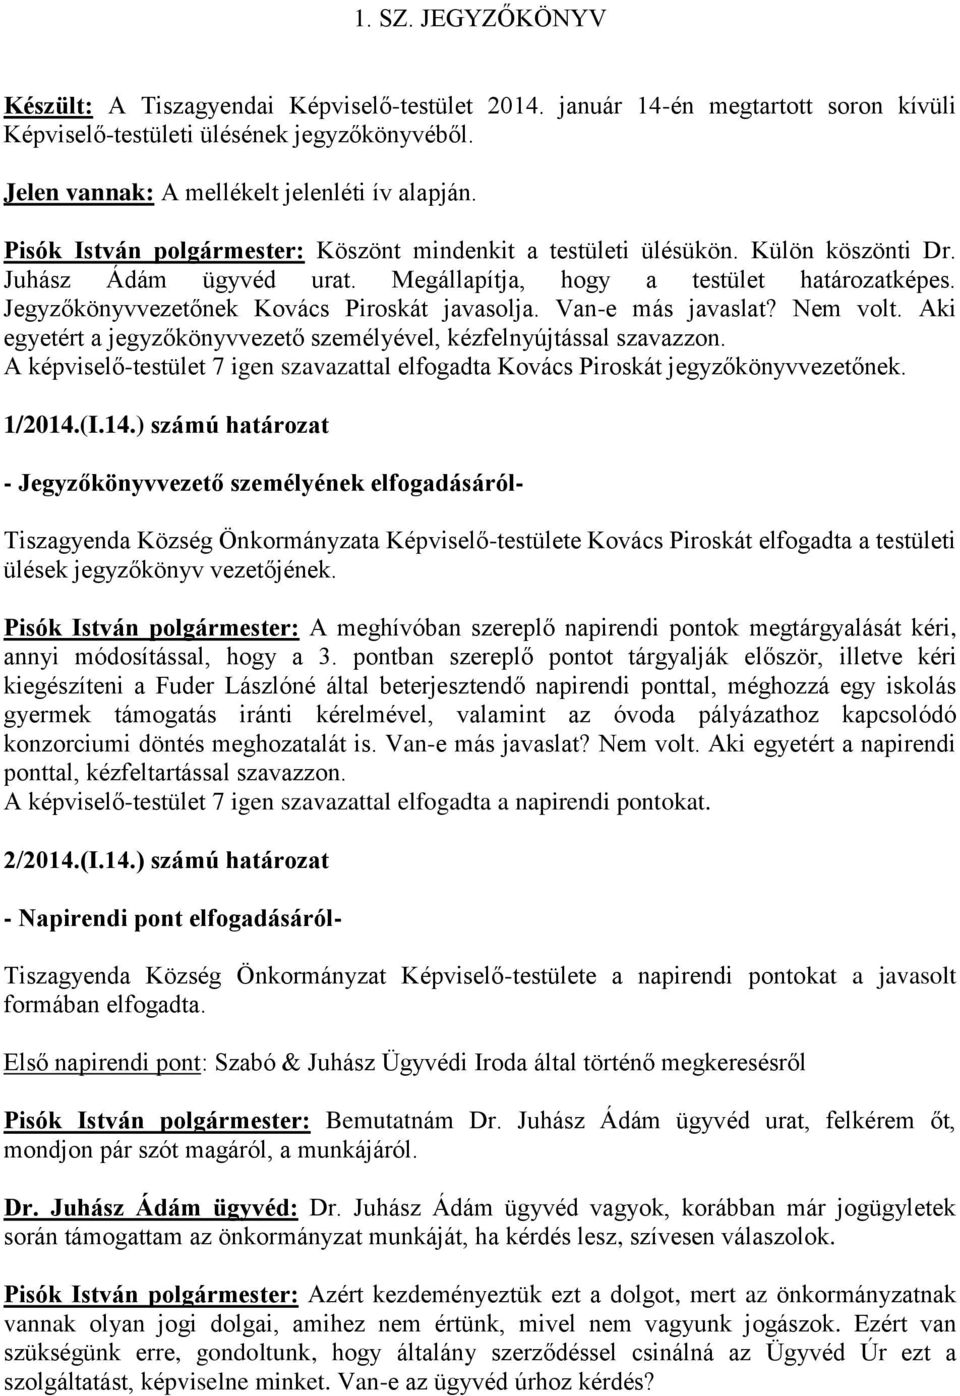 Jegyzőkönyvvezetőnek Kovács Piroskát javasolja. Van-e más javaslat? Nem volt. Aki egyetért a jegyzőkönyvvezető személyével, kézfelnyújtással szavazzon.